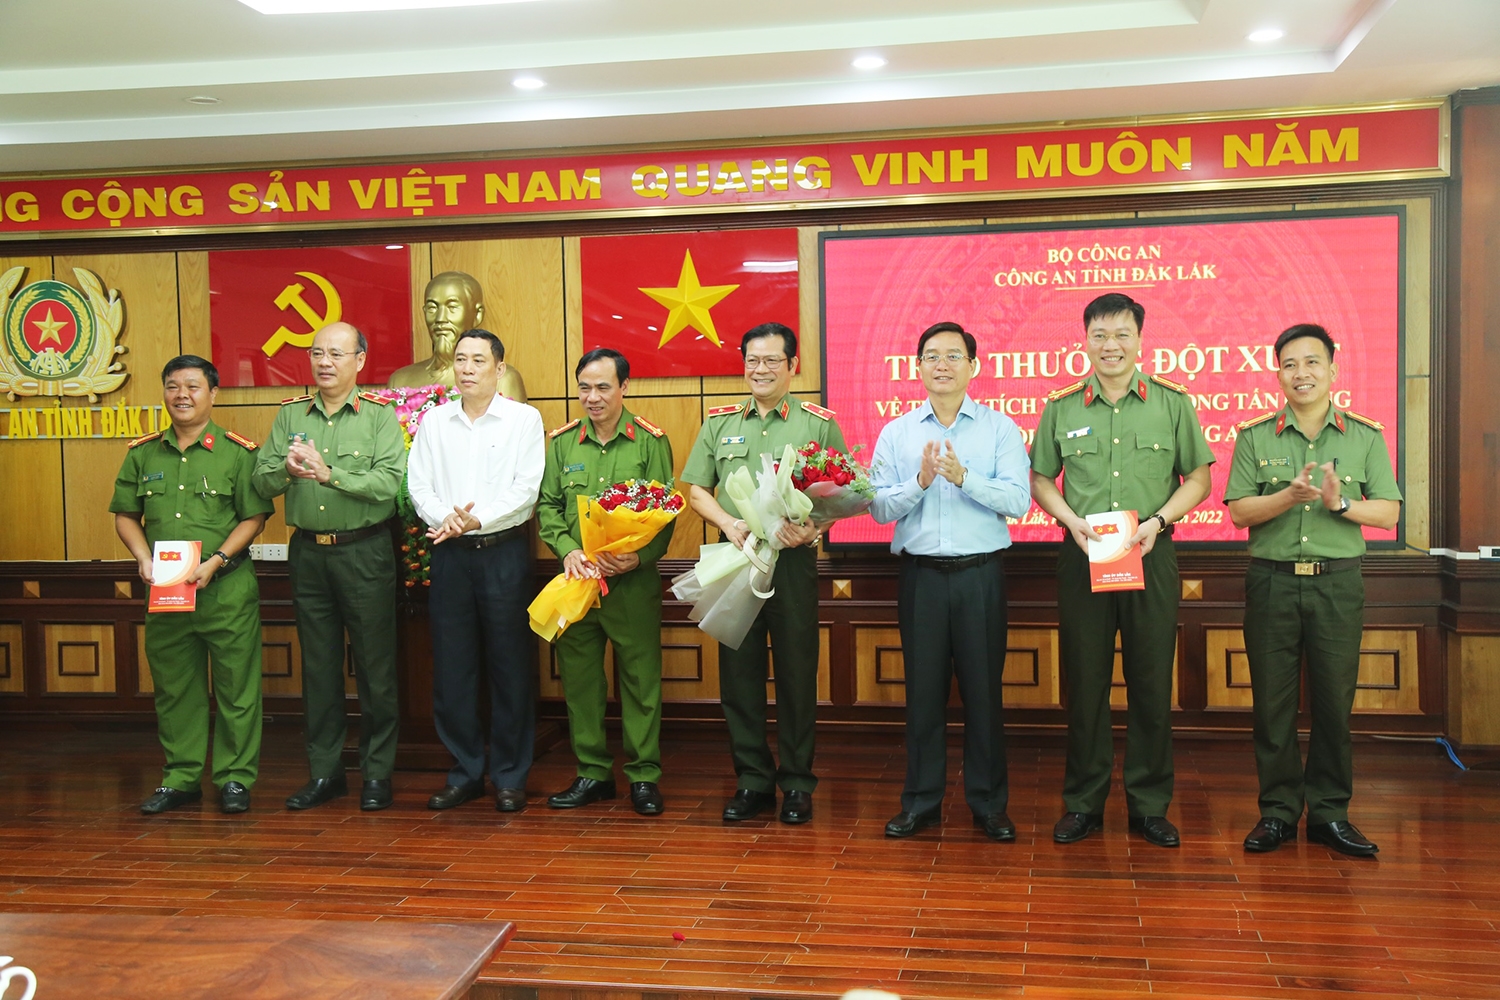 Bí thư Tỉnh ủy Đắk Lắk Nguyễn Đình Trung (thứ 3 từ phải qua) và Phó Chủ tịch UBND tỉnh Võ Văn Cảnh (thứ 3 từ trái qua) tặng hoa lãnh đạo Công an tỉnh và 2 phòng nghiệp vụ phá án